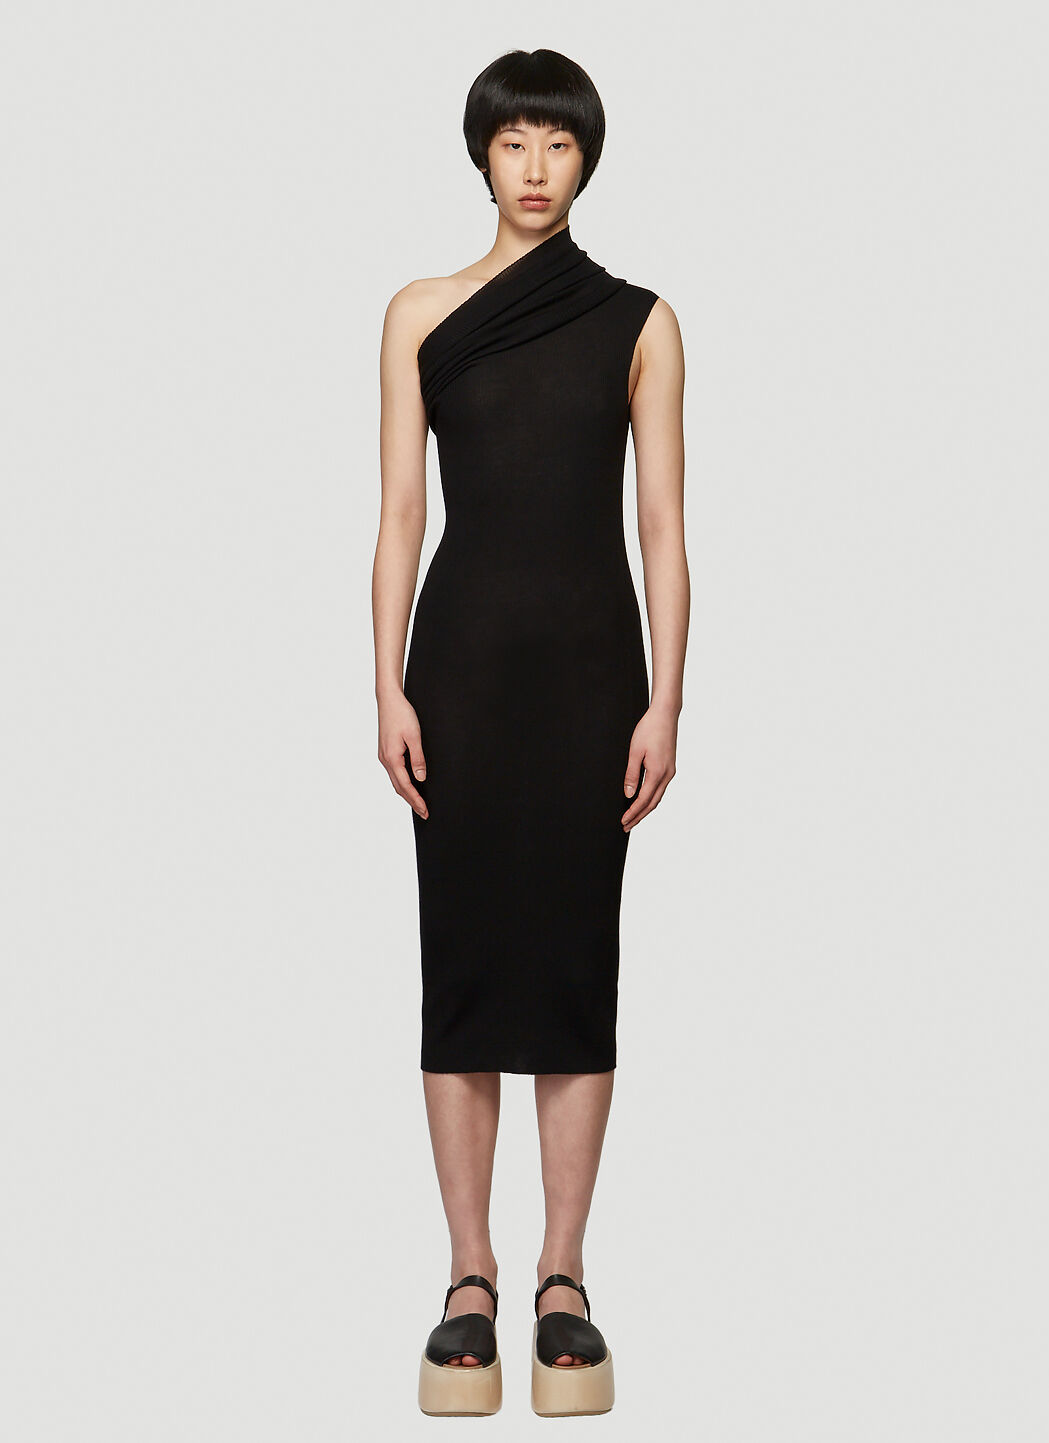 Saint Laurent One Shoulder Dress Black sla0238013